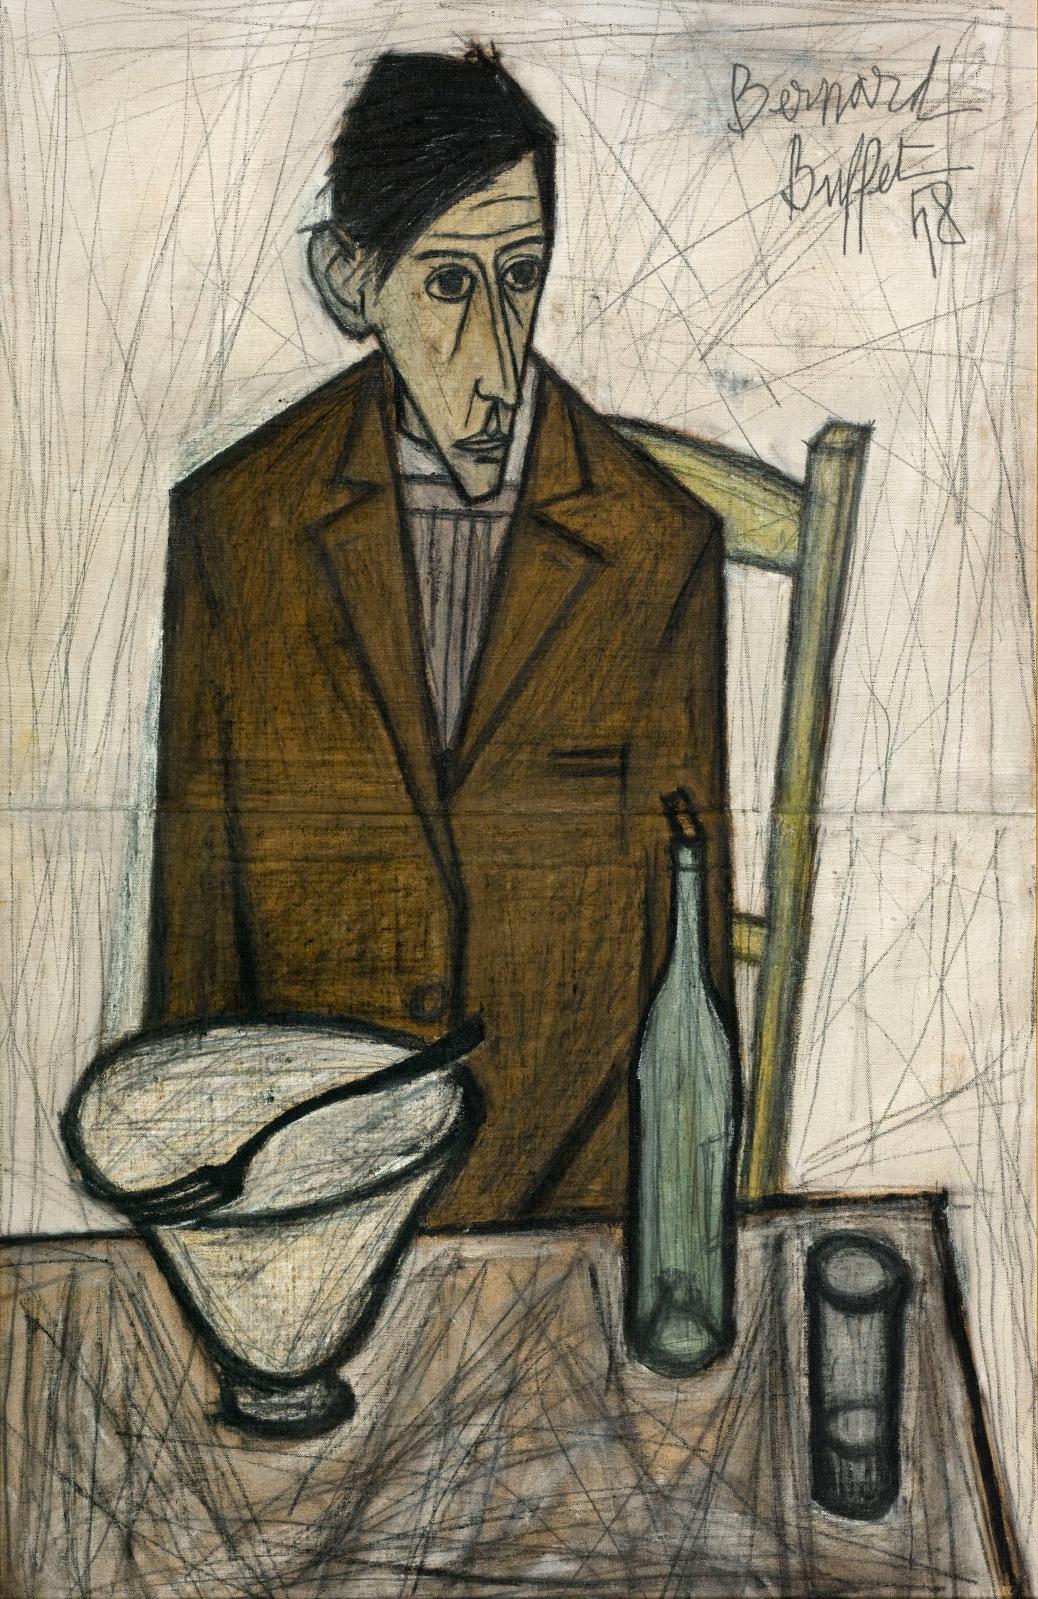 Le Buveur, 1948, huile sur toile, 100 x 65 cm, musée d’Art moderne de la Ville de Paris. © Musée d’Art moderne/Roger-Viollet © Adagp, Pari